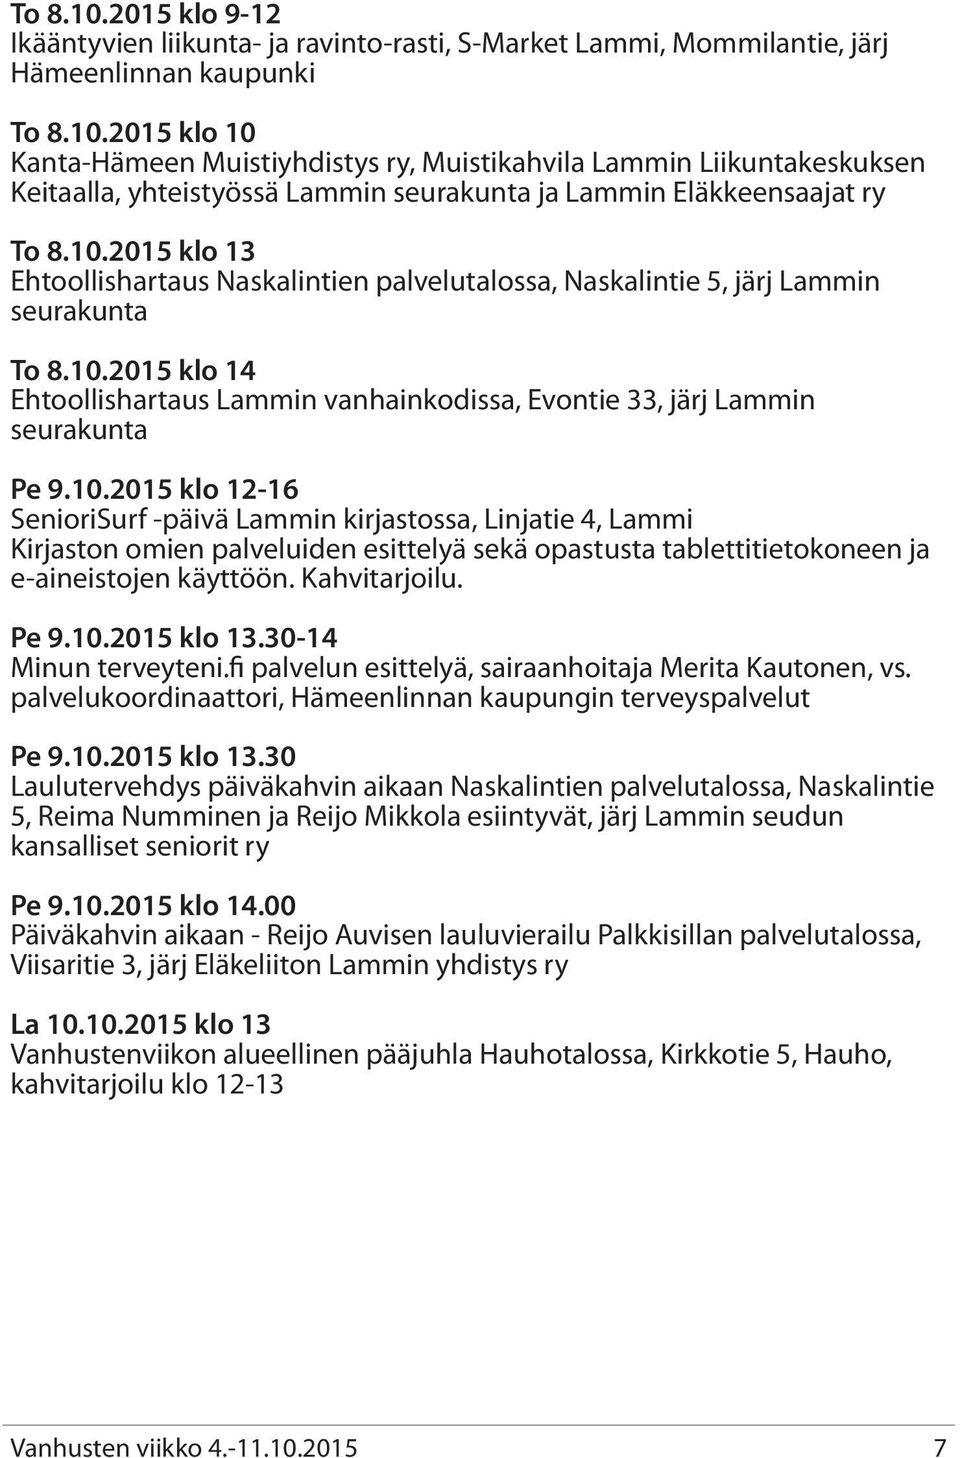 10.2015 klo 12-16 SenioriSurf -päivä Lammin kirjastossa, Linjatie 4, Lammi Kirjaston omien palveluiden esittelyä sekä opastusta tablettitietokoneen ja e-aineistojen käyttöön. Kahvitarjoilu. Pe 9.10.2015 klo 13.